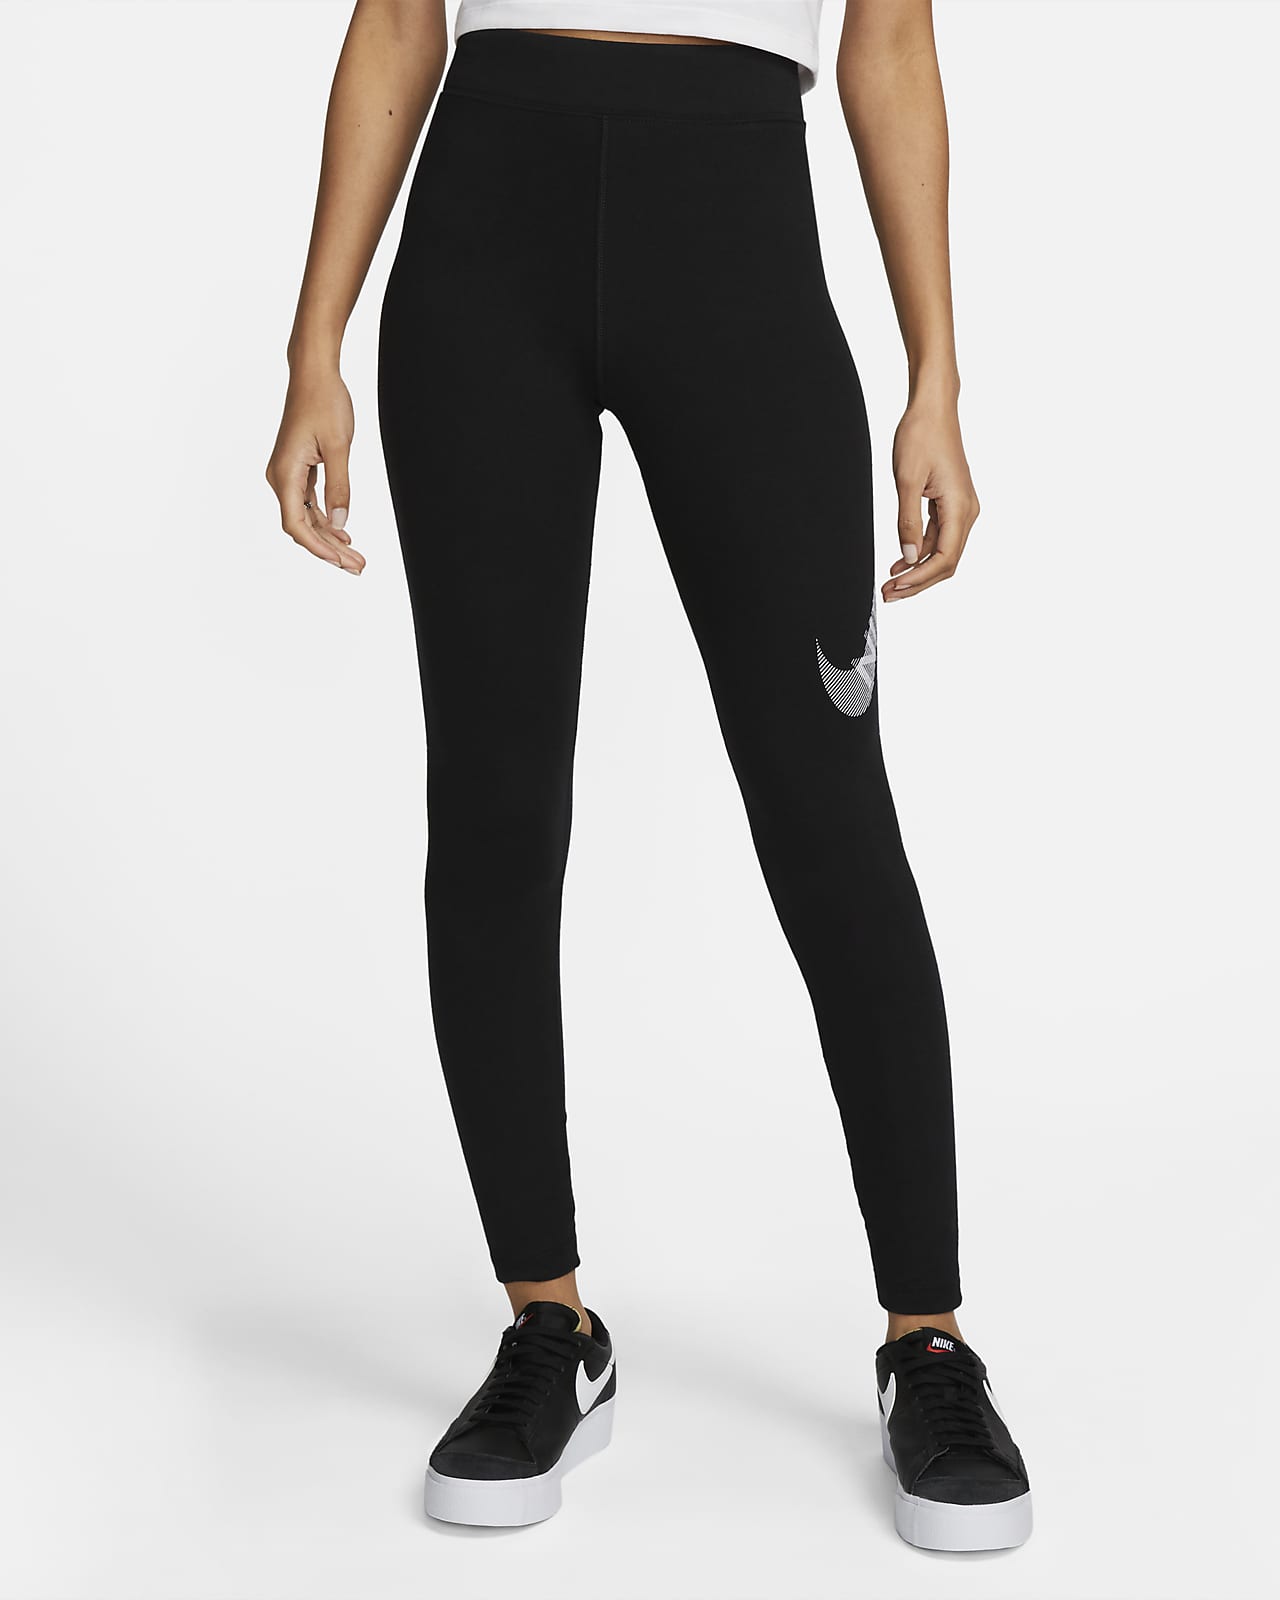 Nike Sportswear Swoosh Leggings de talle alto - Mujer